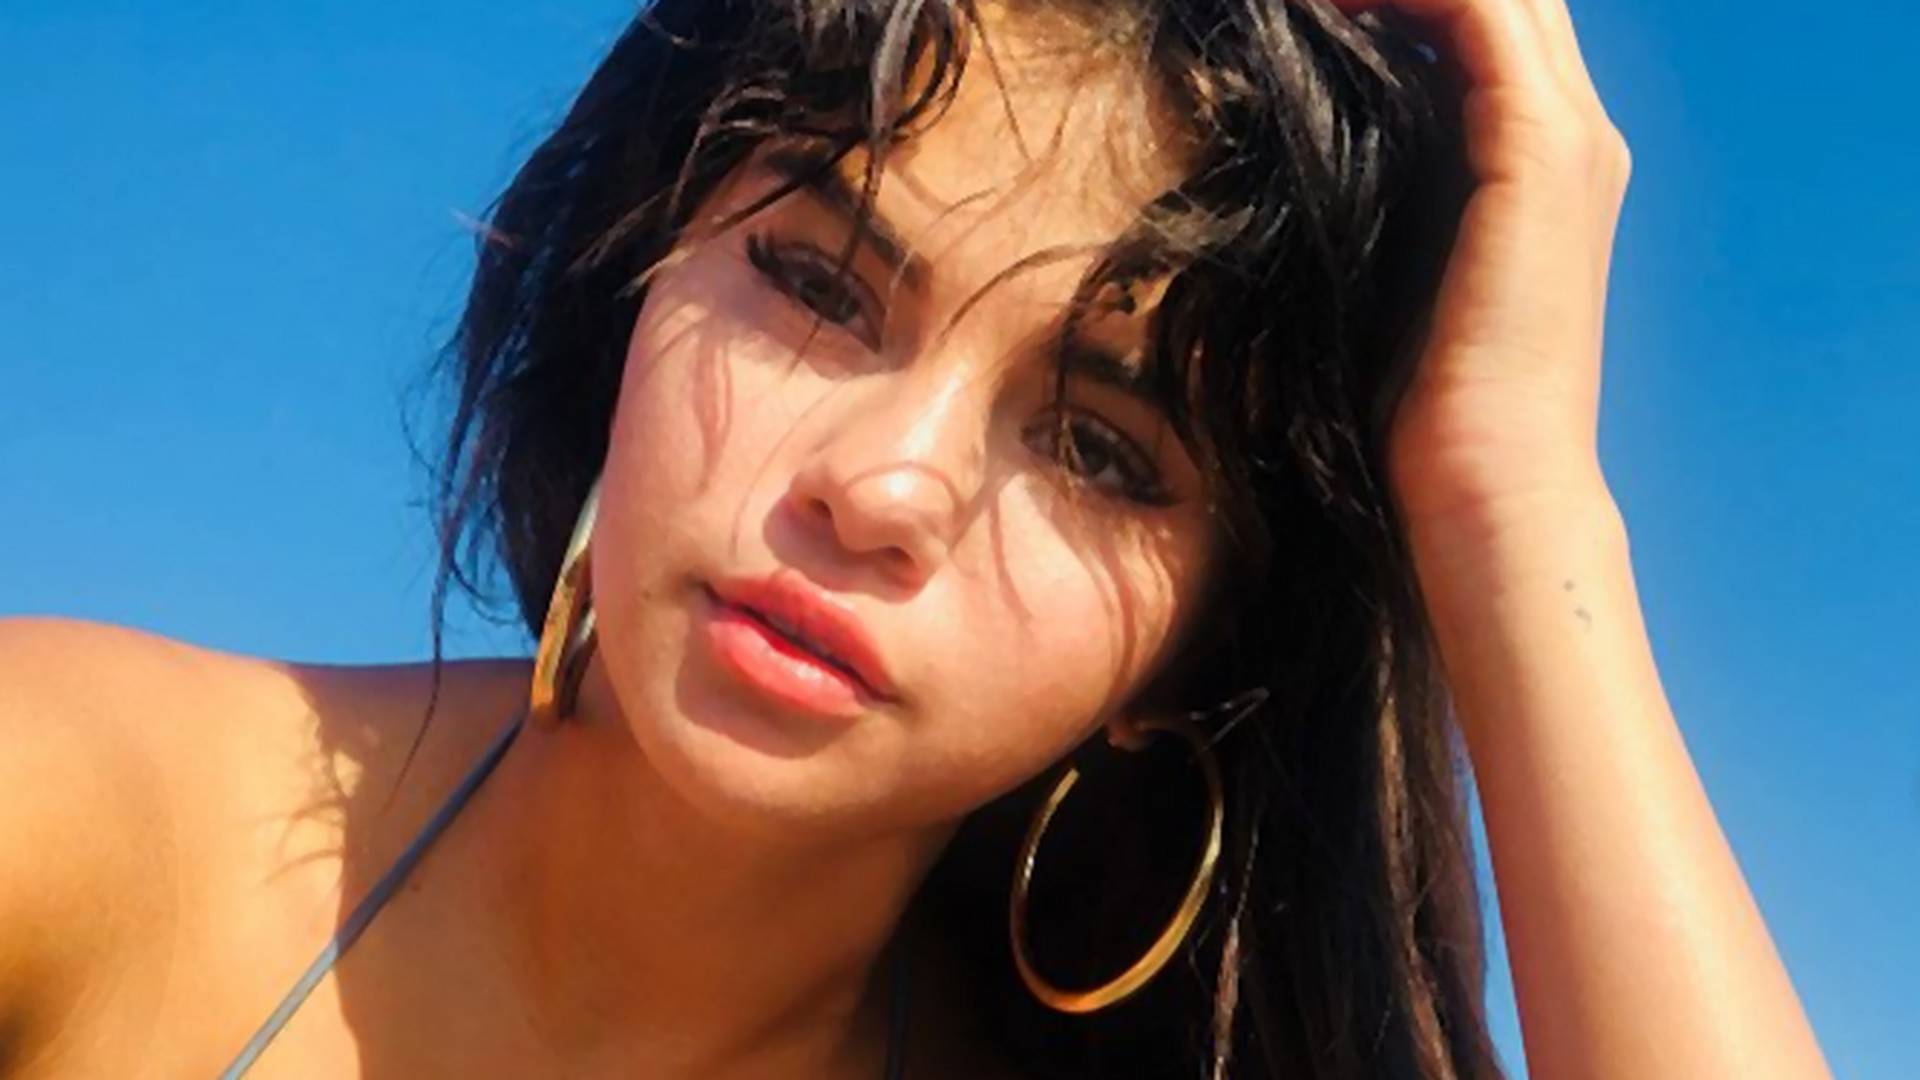 Selena Gomez levetkőzte minden gátlását: retus nélküli képeken, falatnyi bikiniben mutatta meg testét - Fotók 